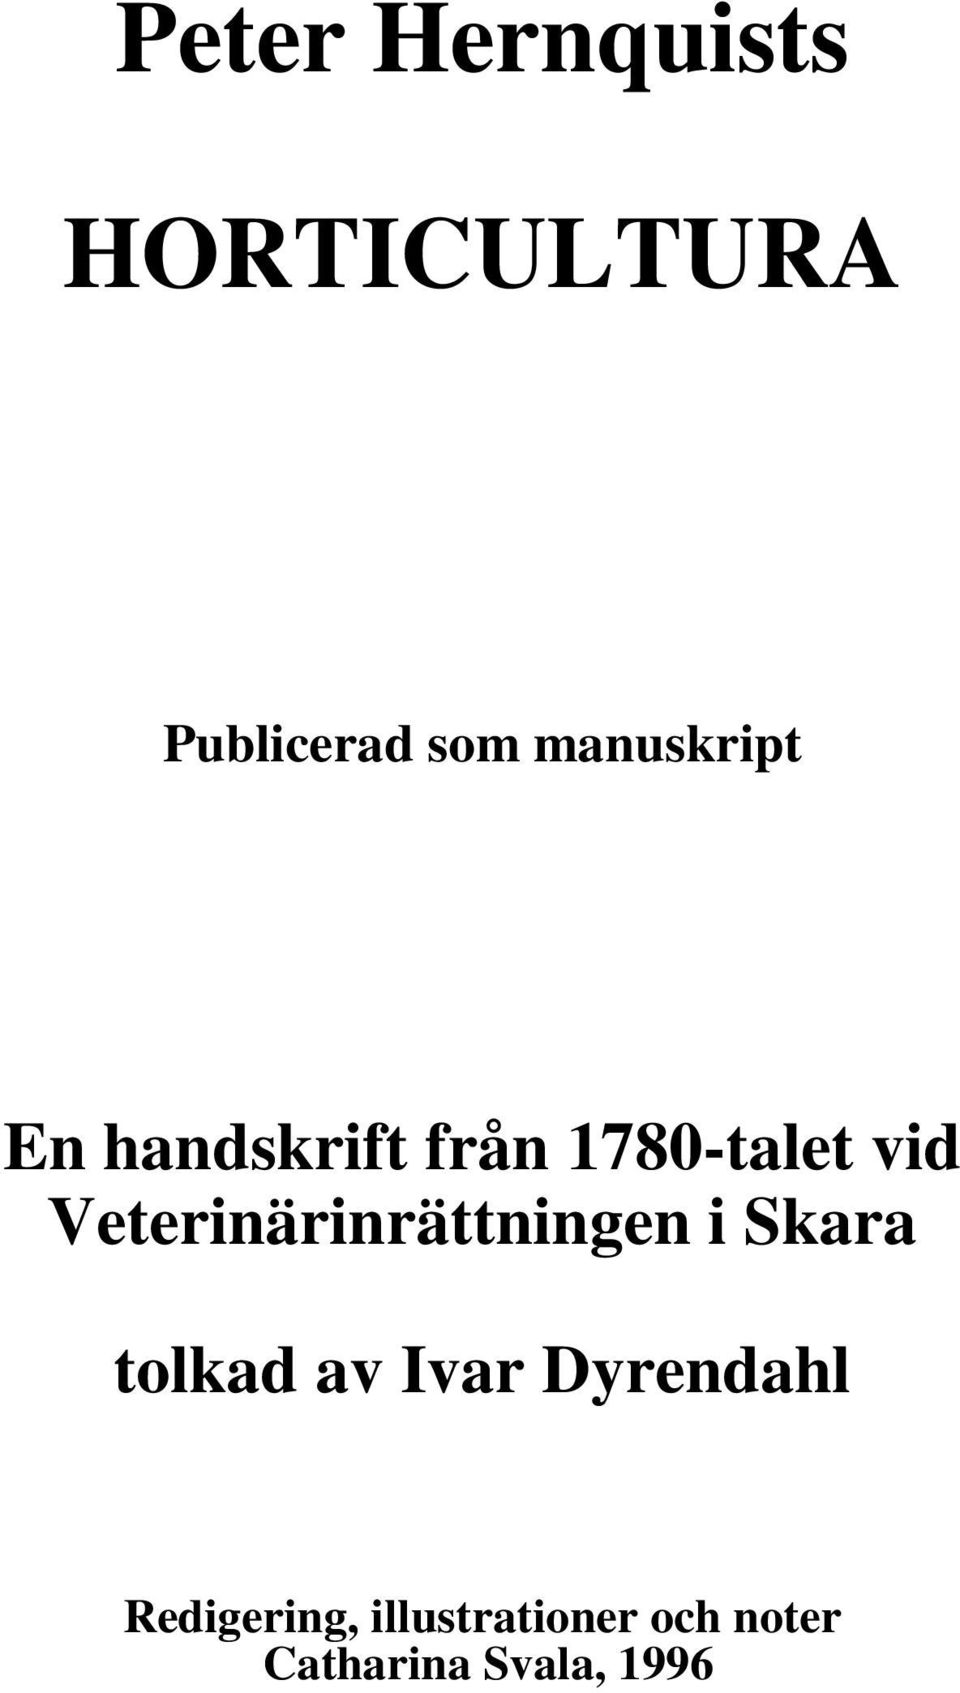 Veterinärinrättningen i Skara tolkad av Ivar